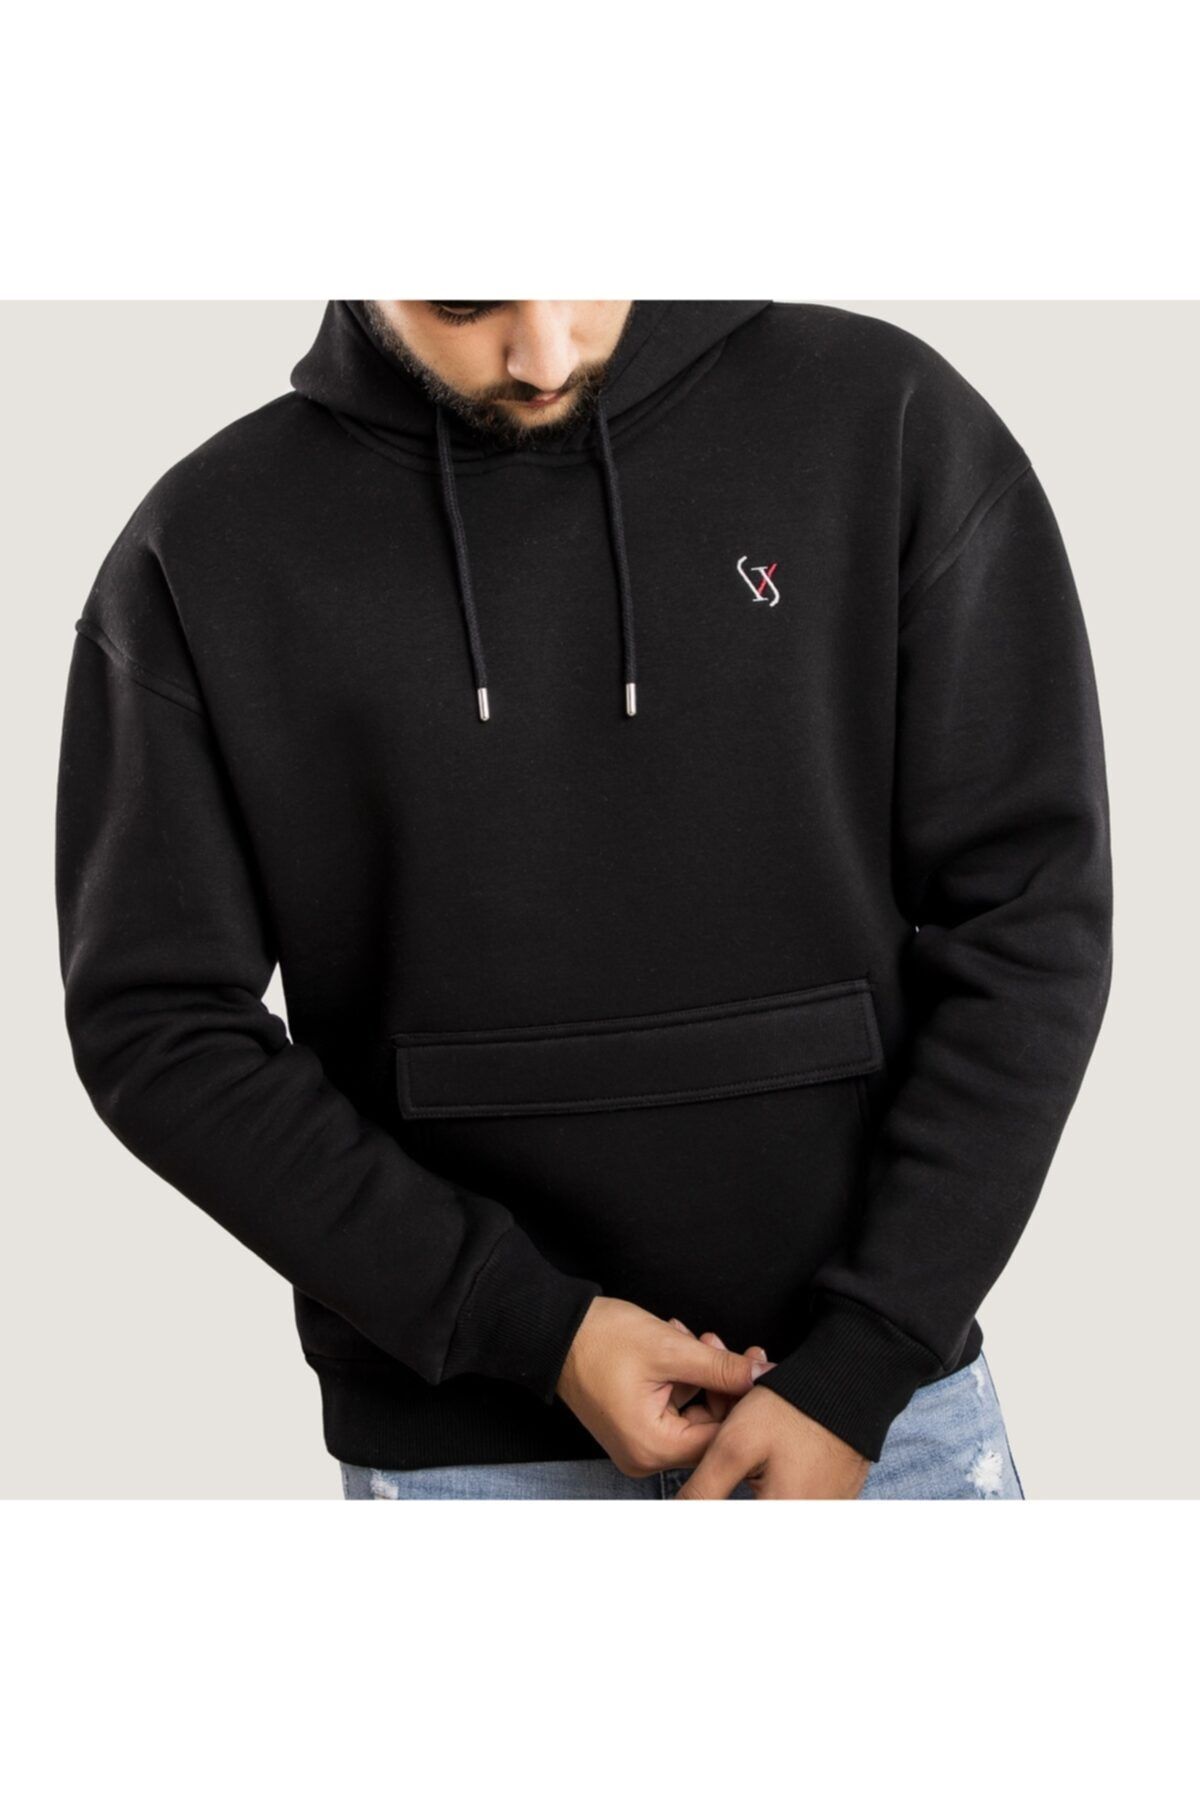 WELLHS Erkek Siyah Logo Nakışlı Oversize Sweatshirt